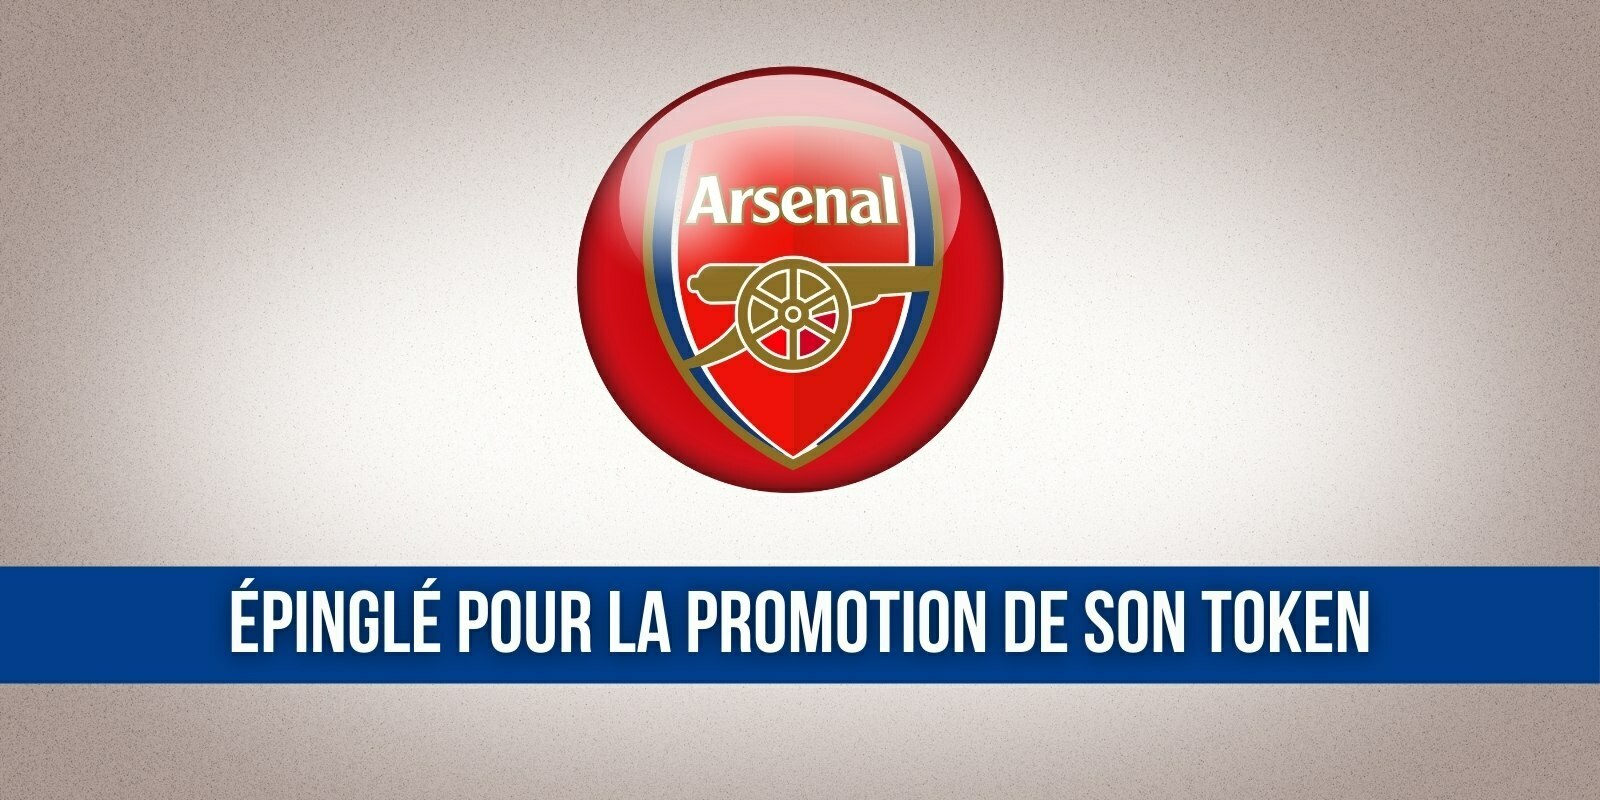 Arsenal se voit interdire des publicités concernant son fan token AFC